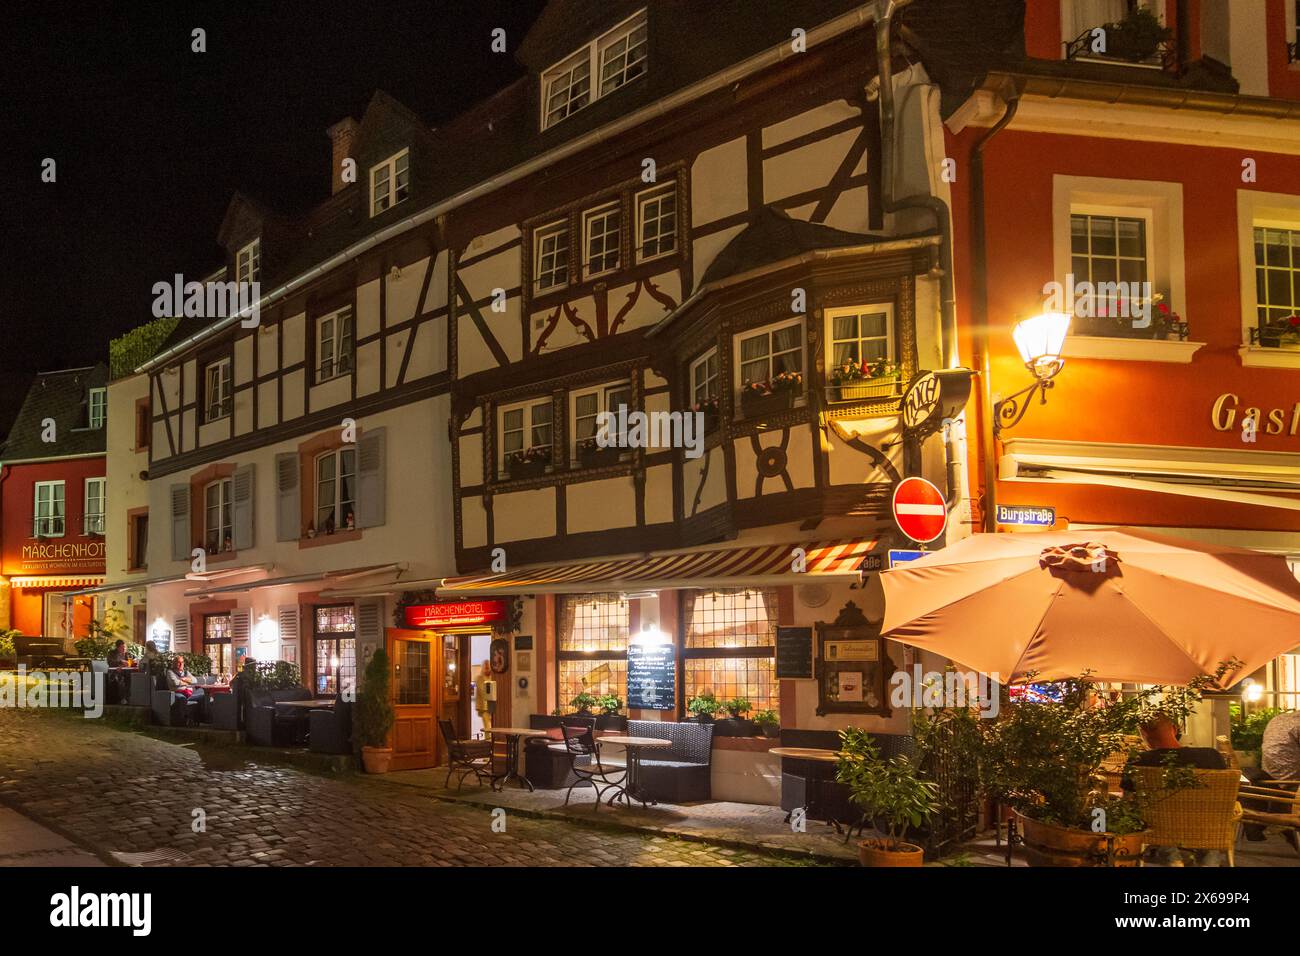 Bernkastel-Kues, rue Burgstraße dans la vieille ville, restaurant, région de Moselle, Rhénanie-Palatinat, Allemagne Banque D'Images